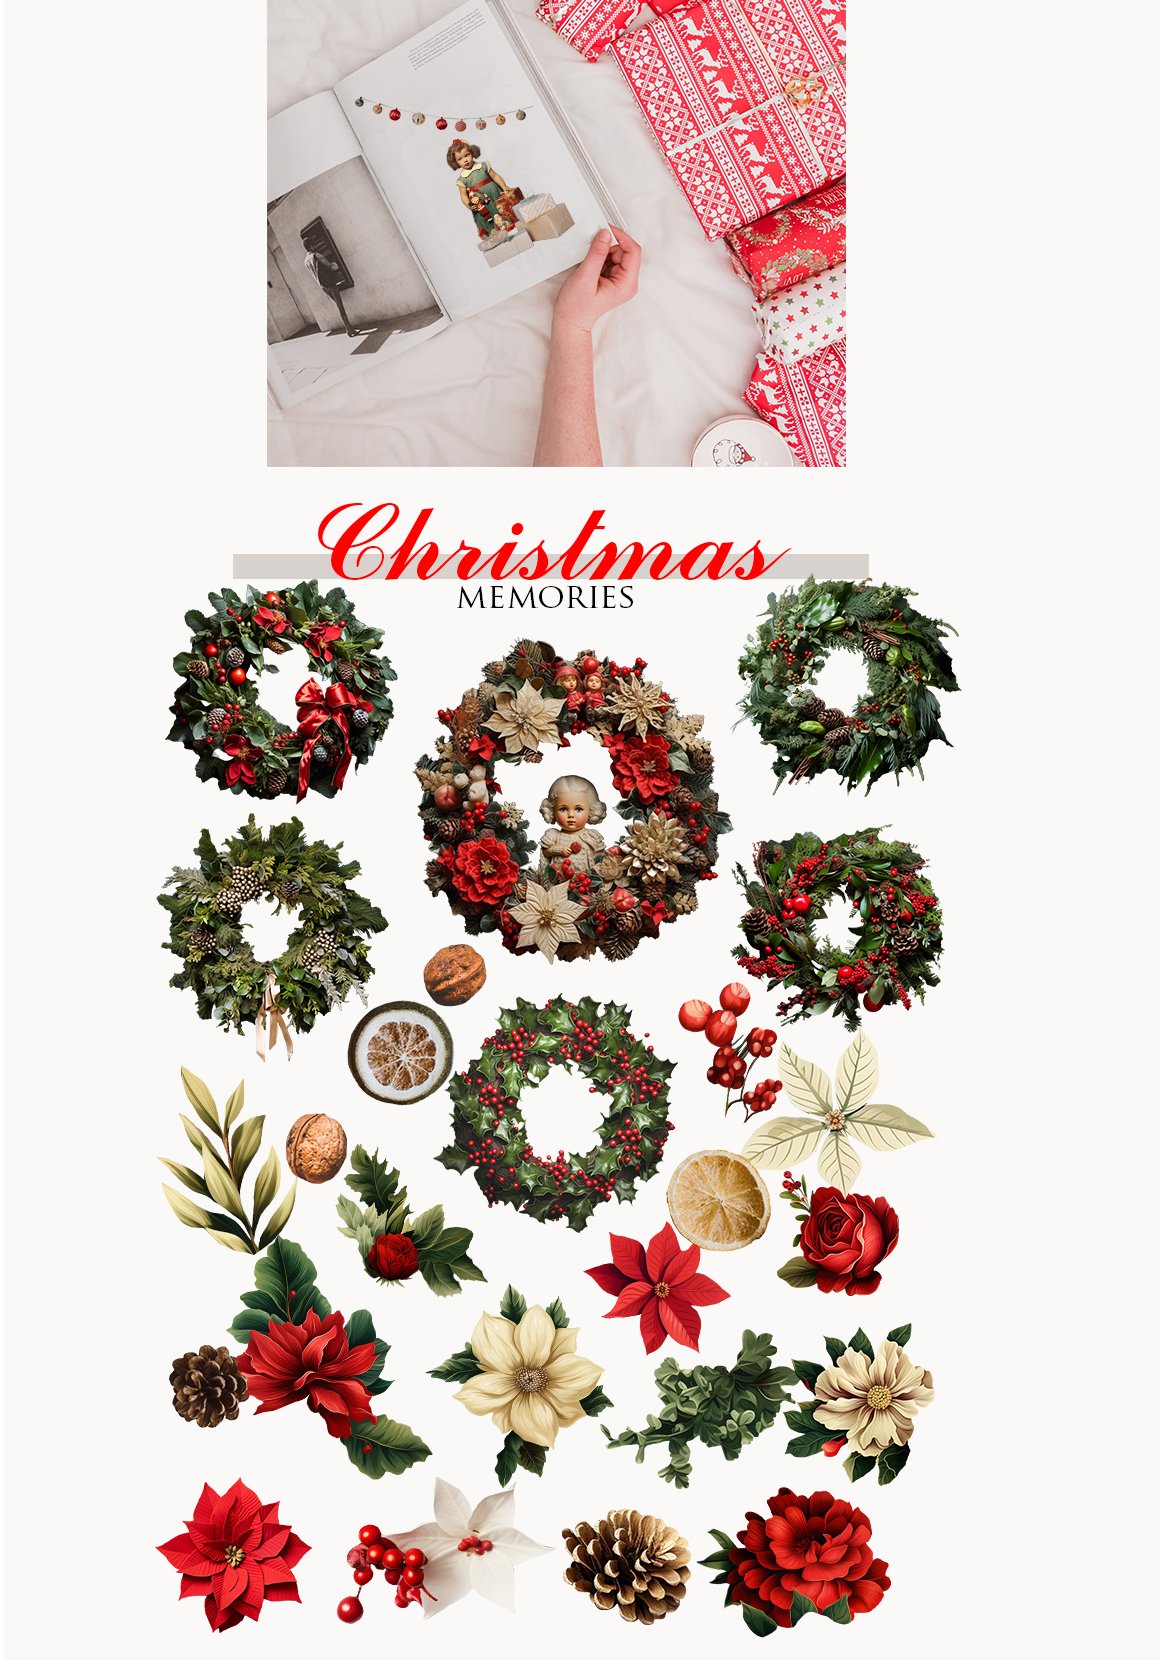 Retro Christmas Collage Creator - Design Cuts